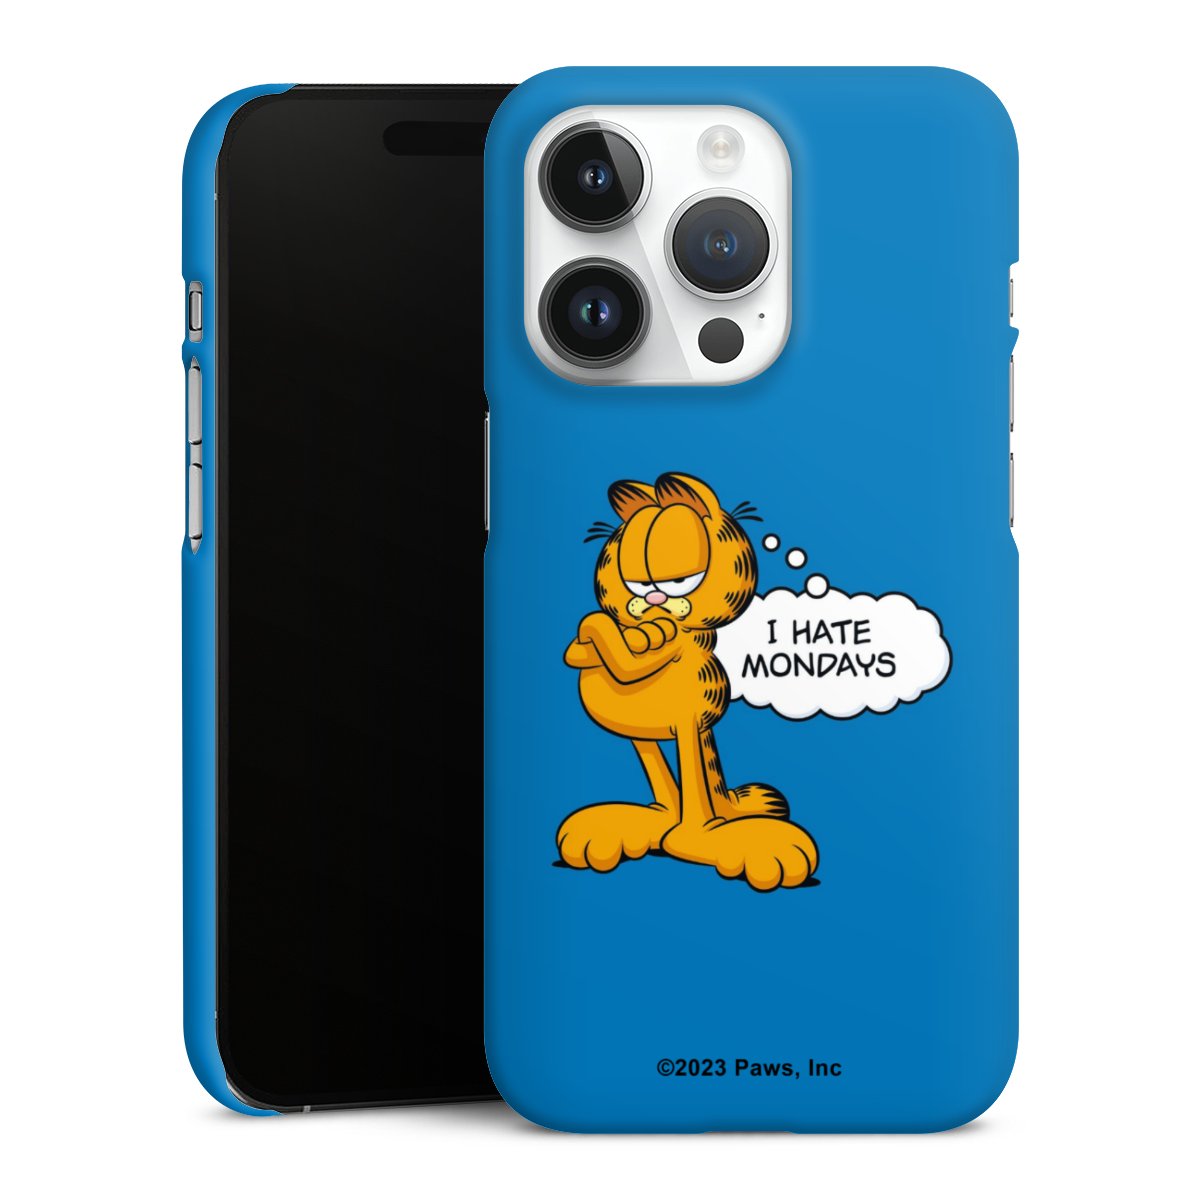 Garfield Je déteste les lundis Bleu